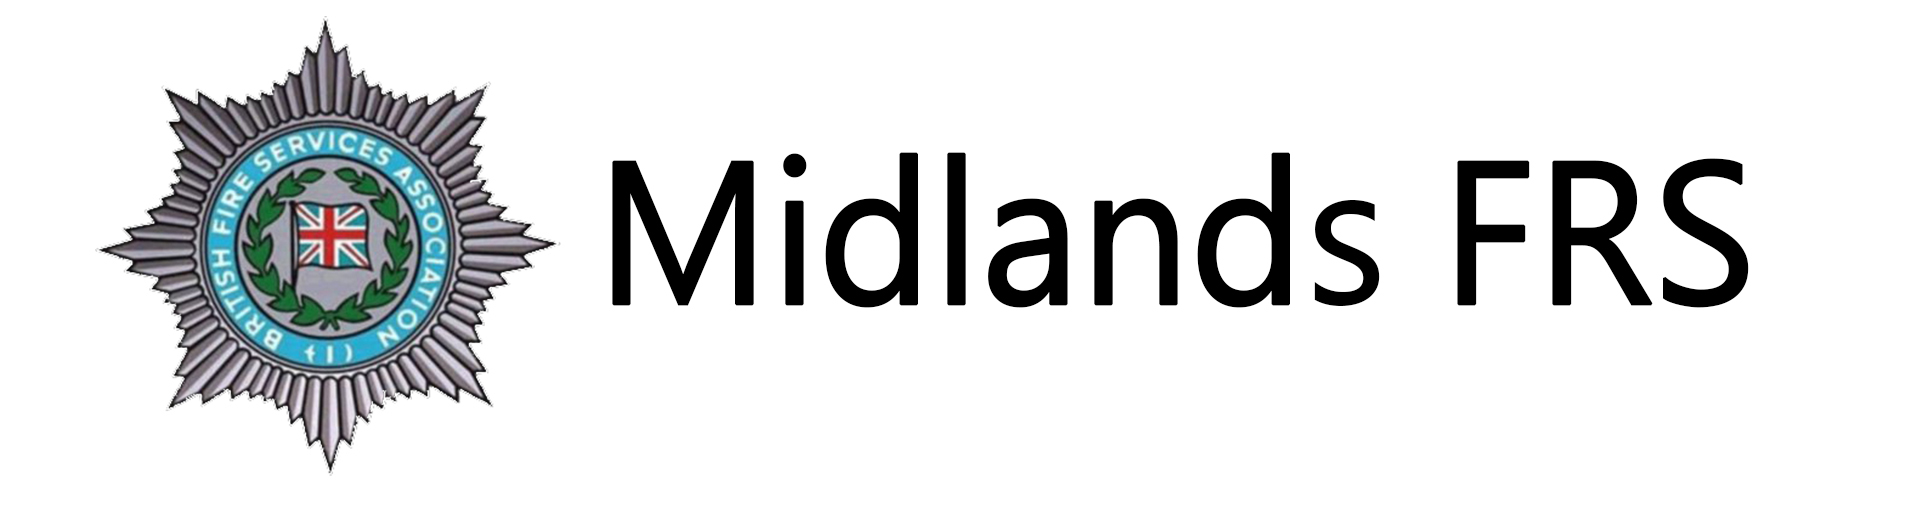 Midlands FRS